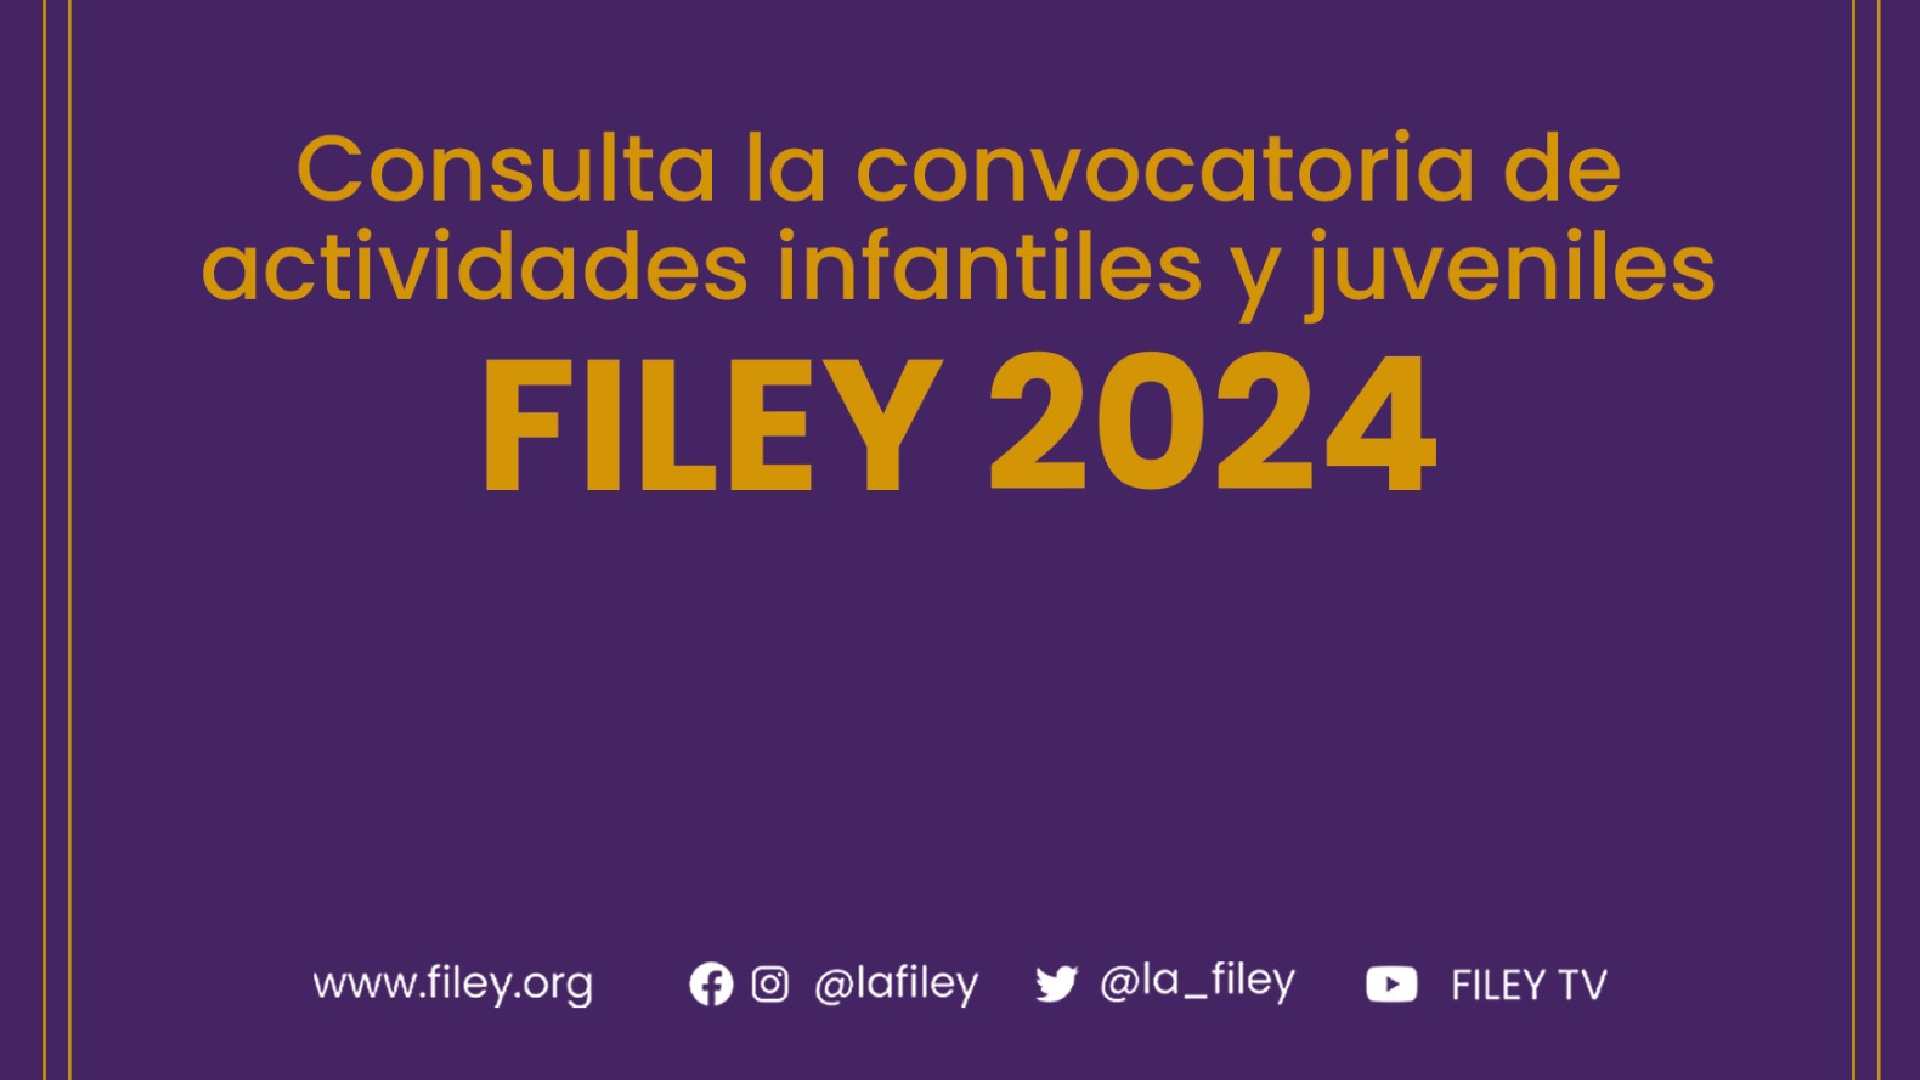 Convocatoria Filey 2024 es lanzada para interesados en participar en12a edición .